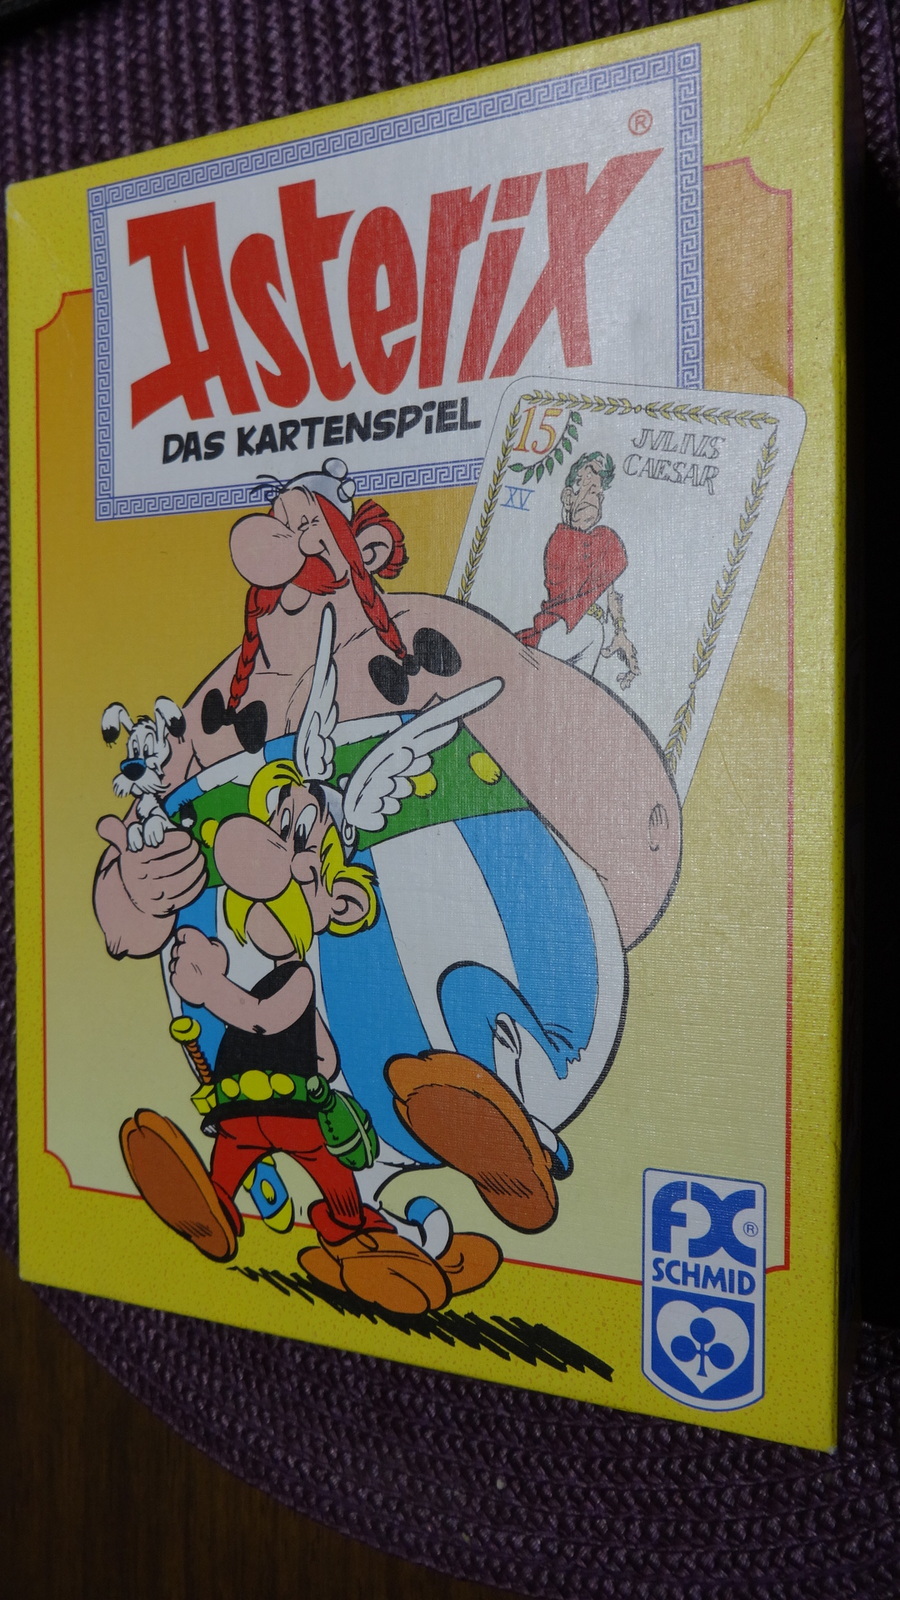 Asterix Kartenspiel